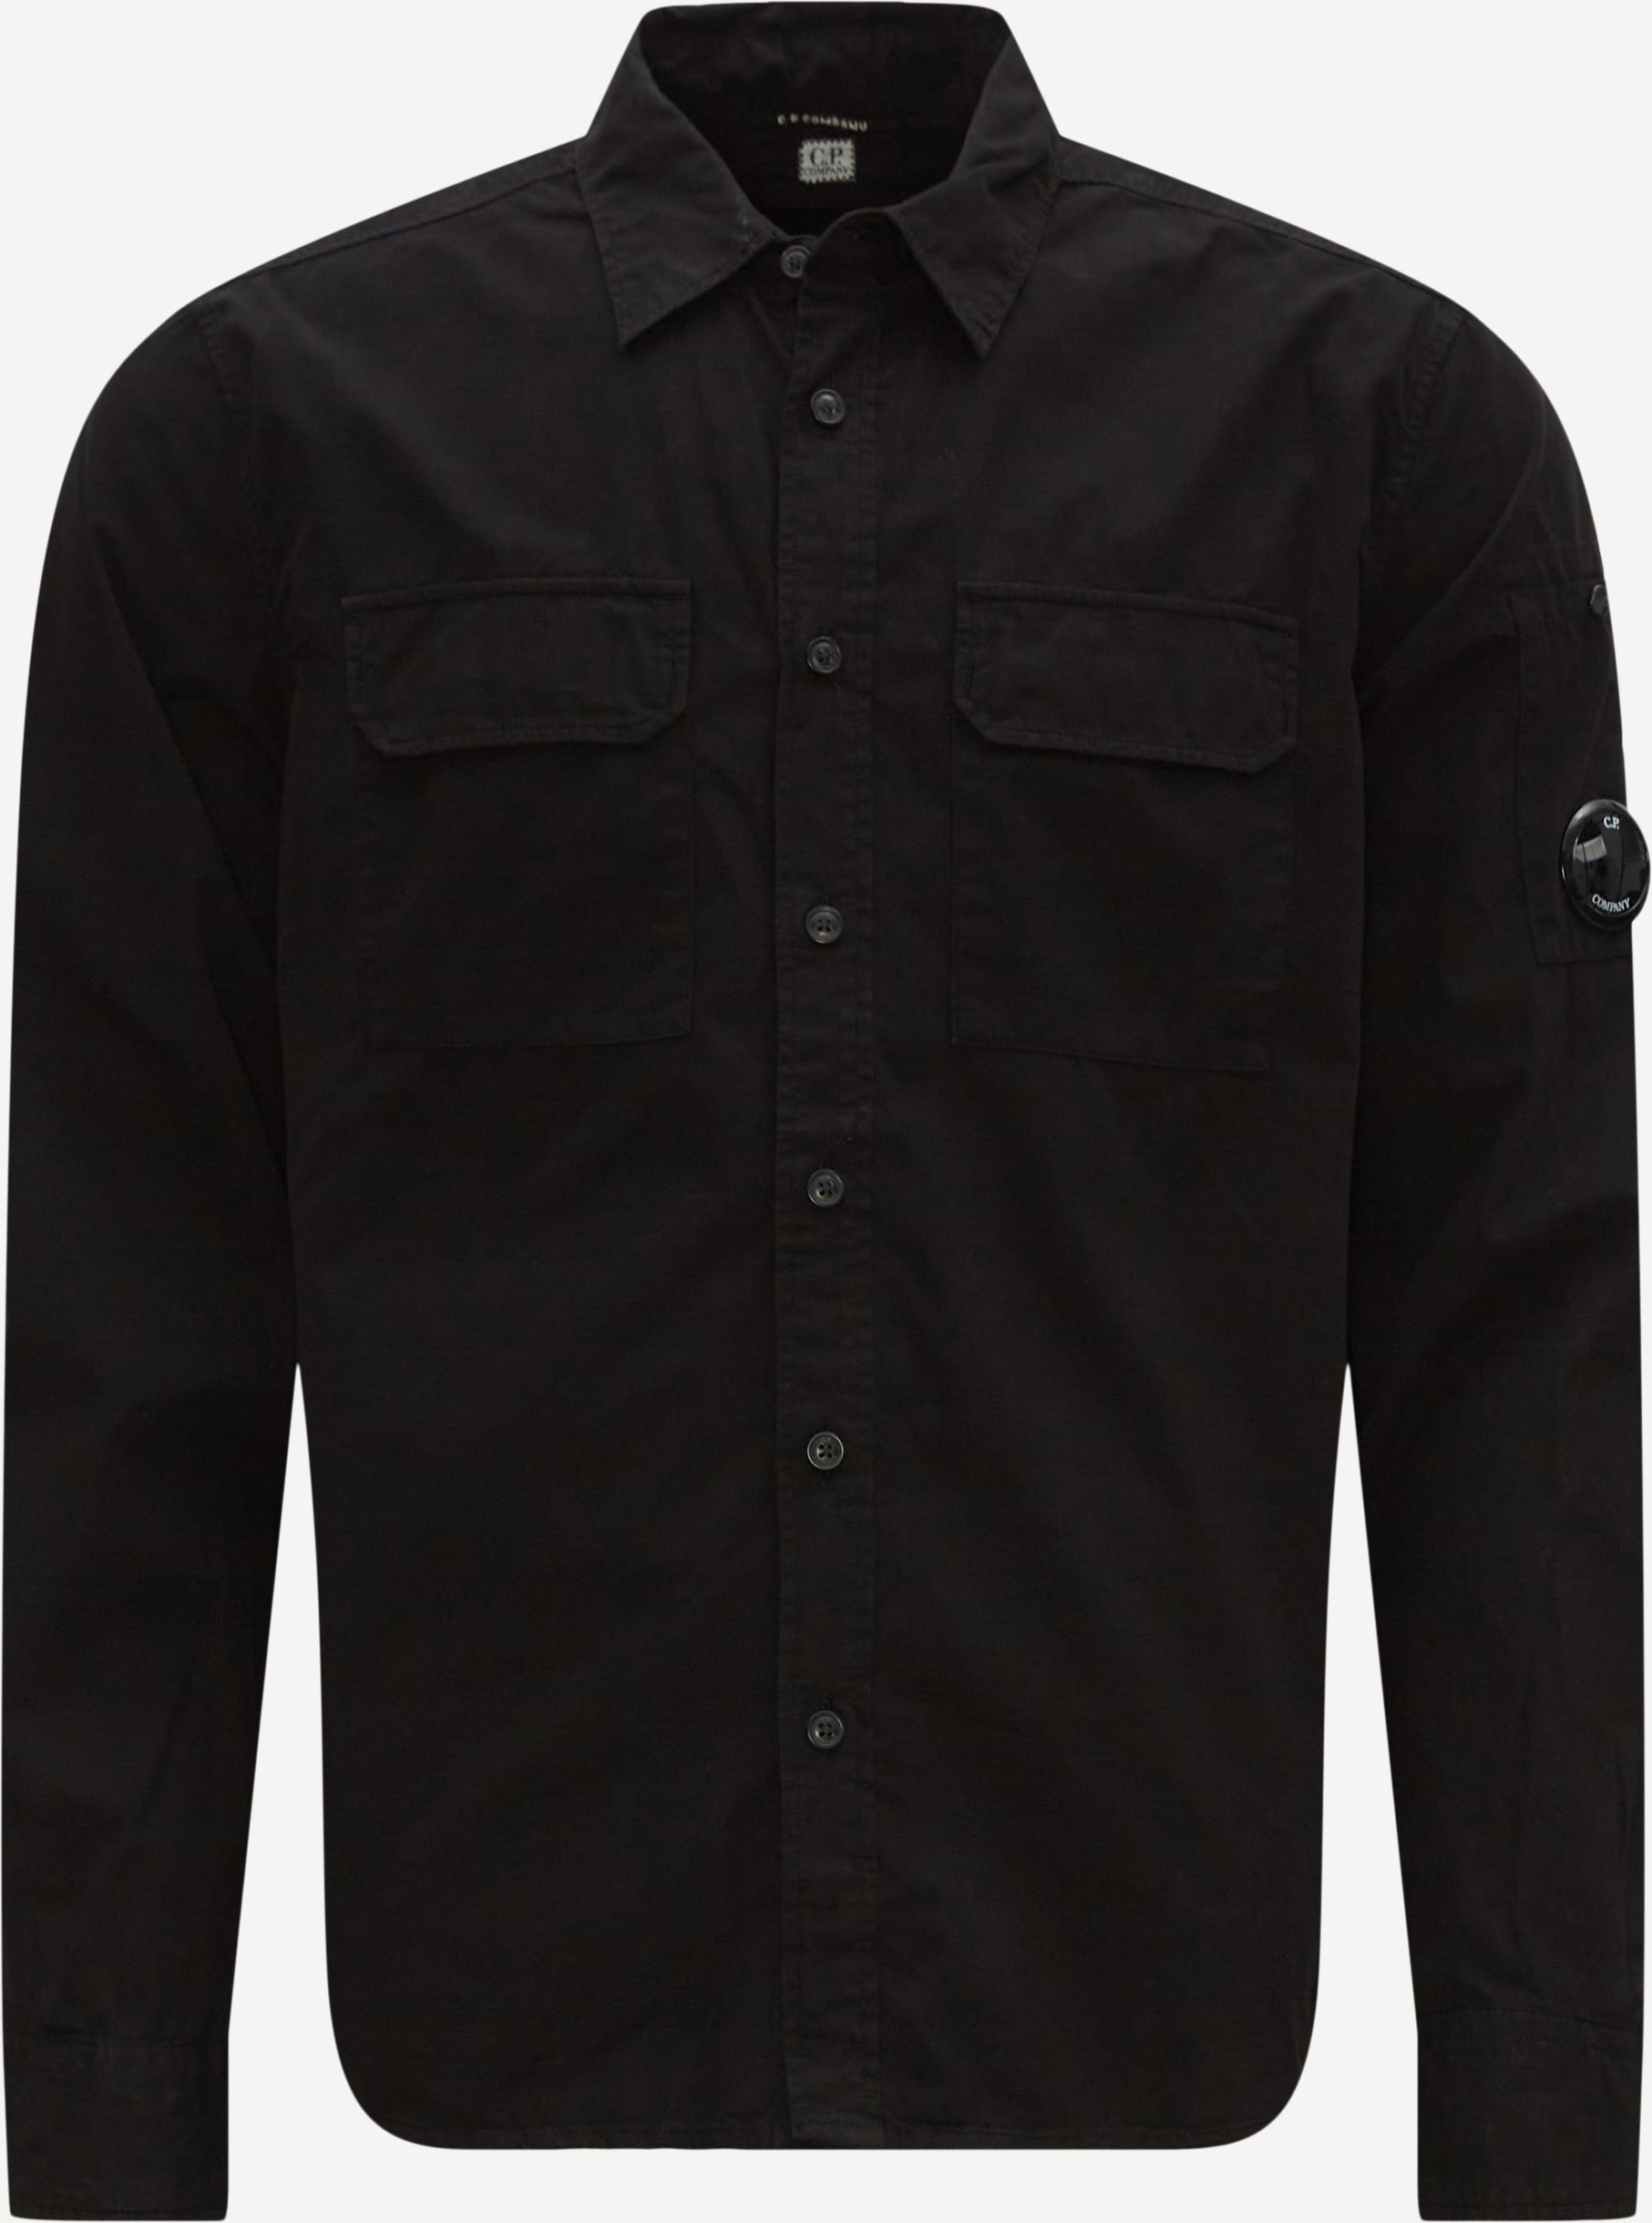 C.P. Company Shirts SH157A 2824G Black